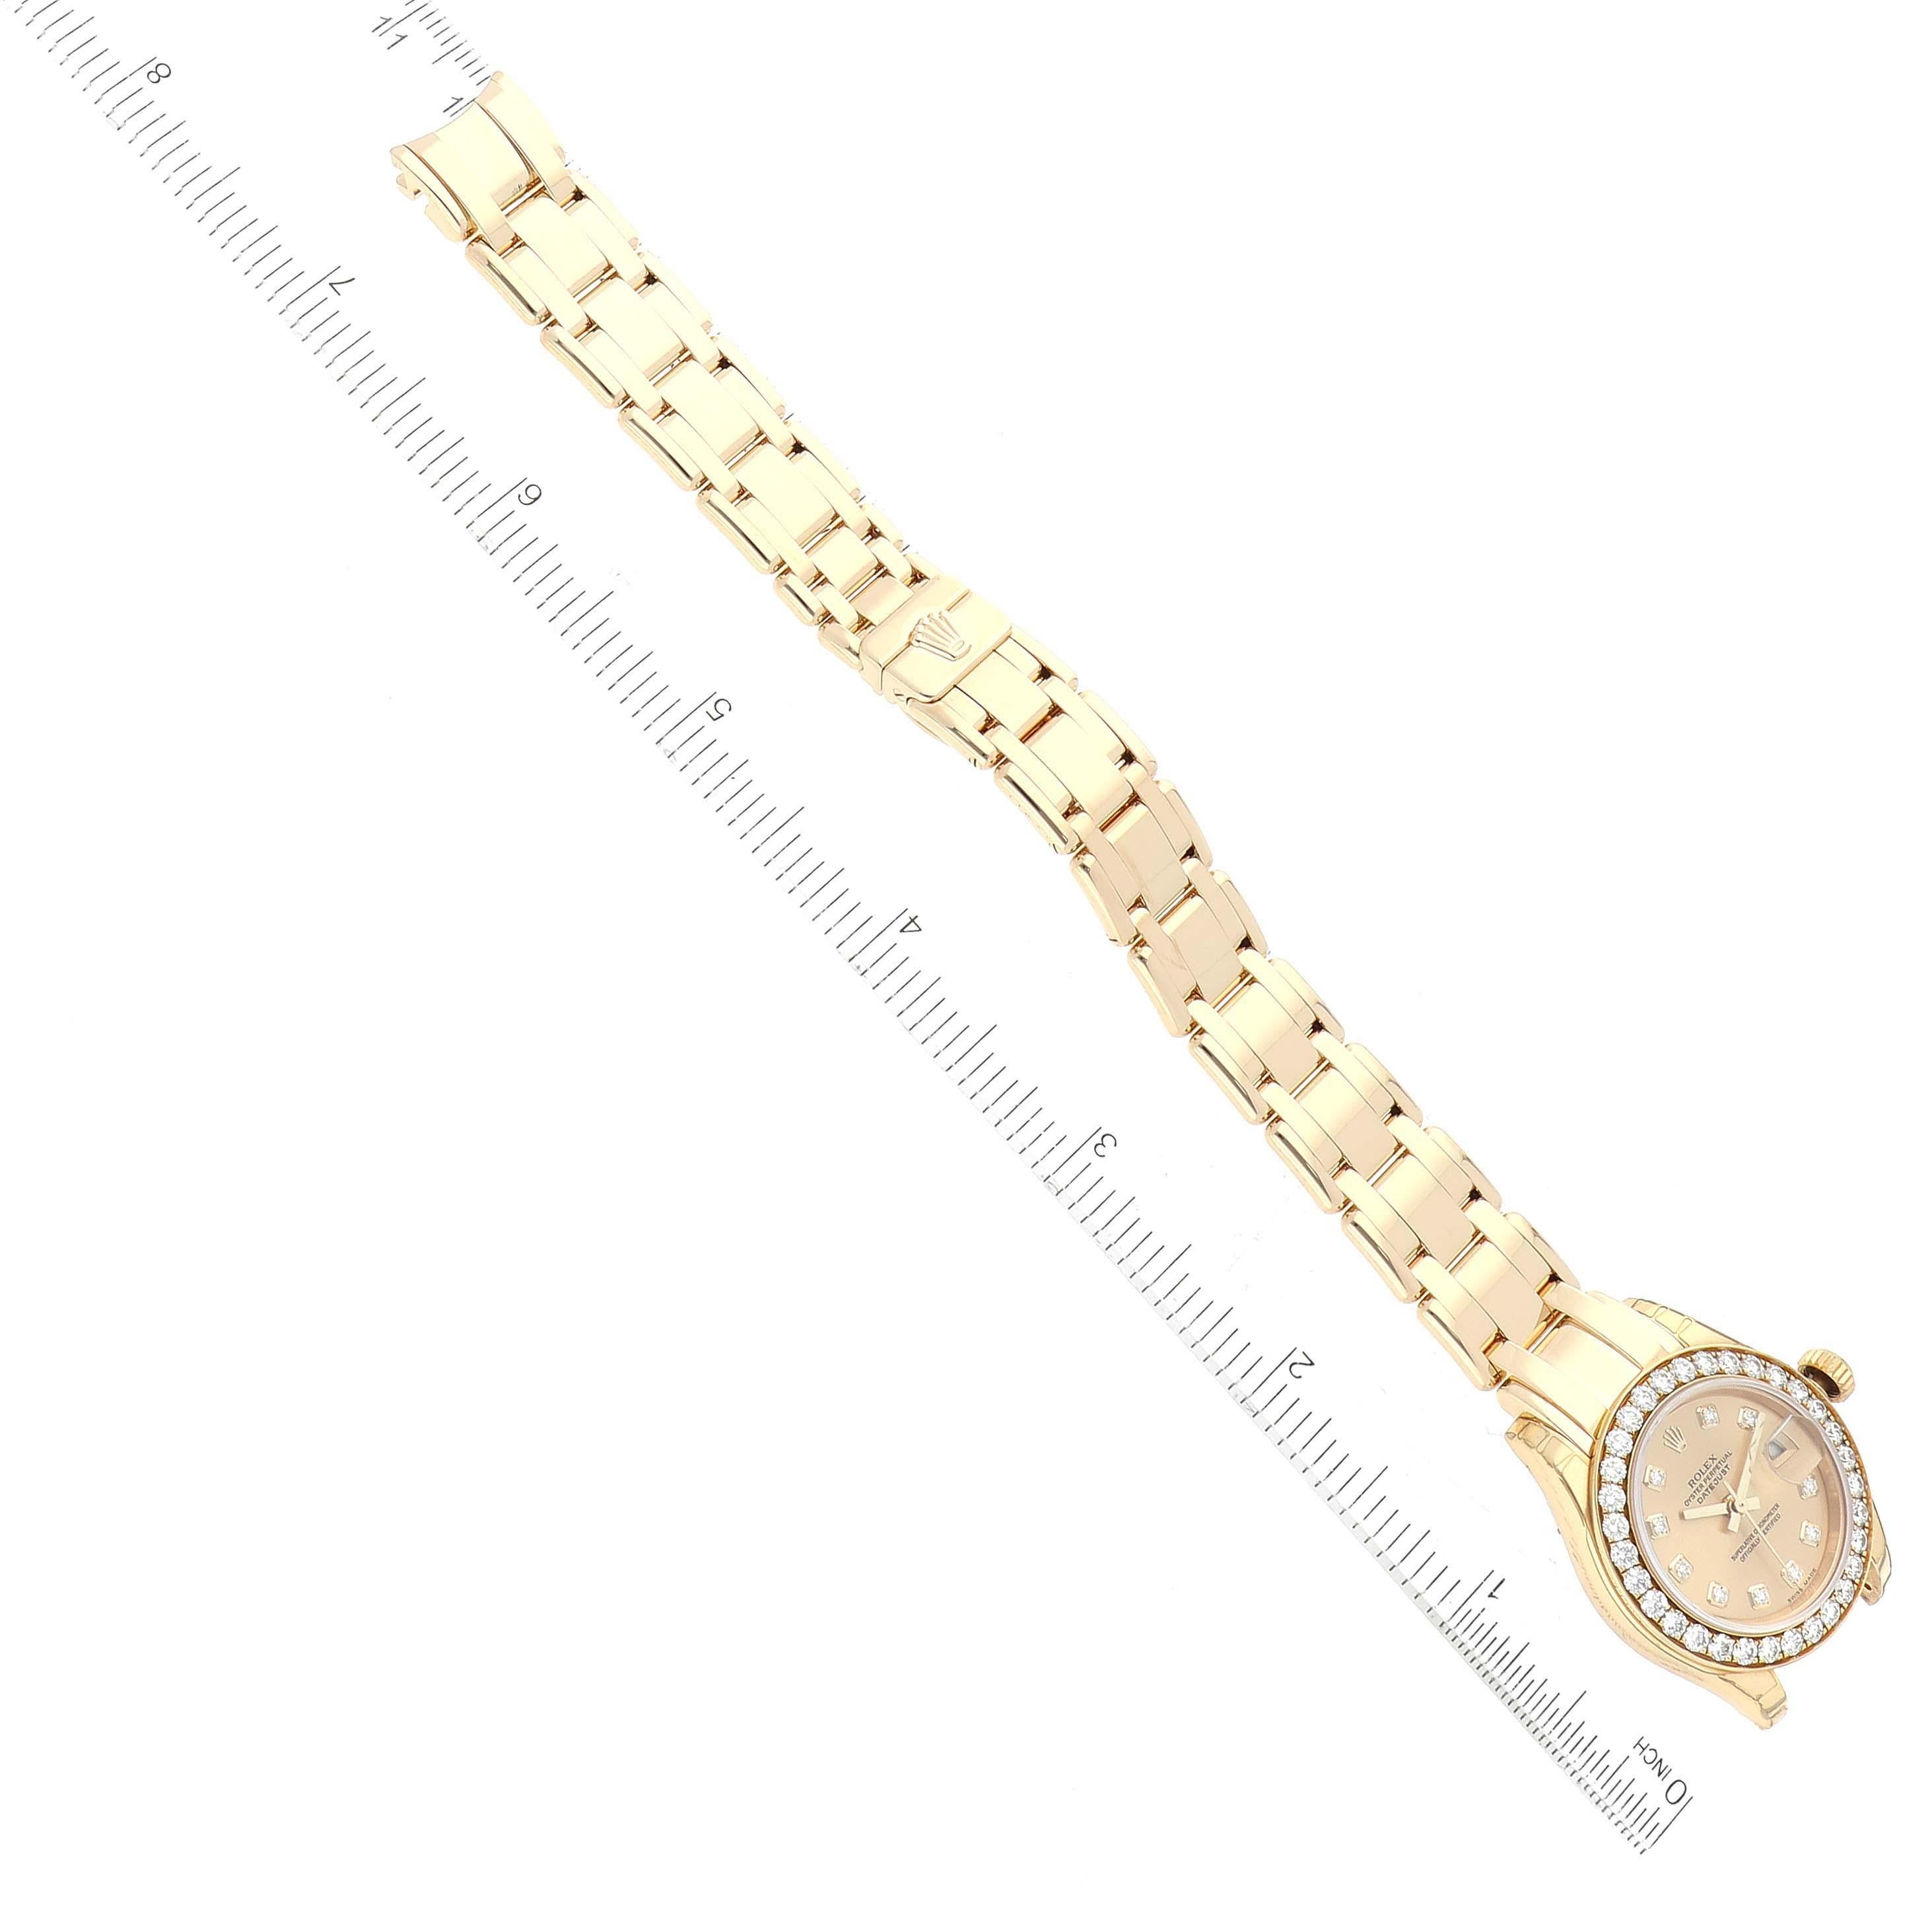 Rolex Pearlmaster Yellow Gold Diamond Ladies Watch 80298 Unworn NOS 5